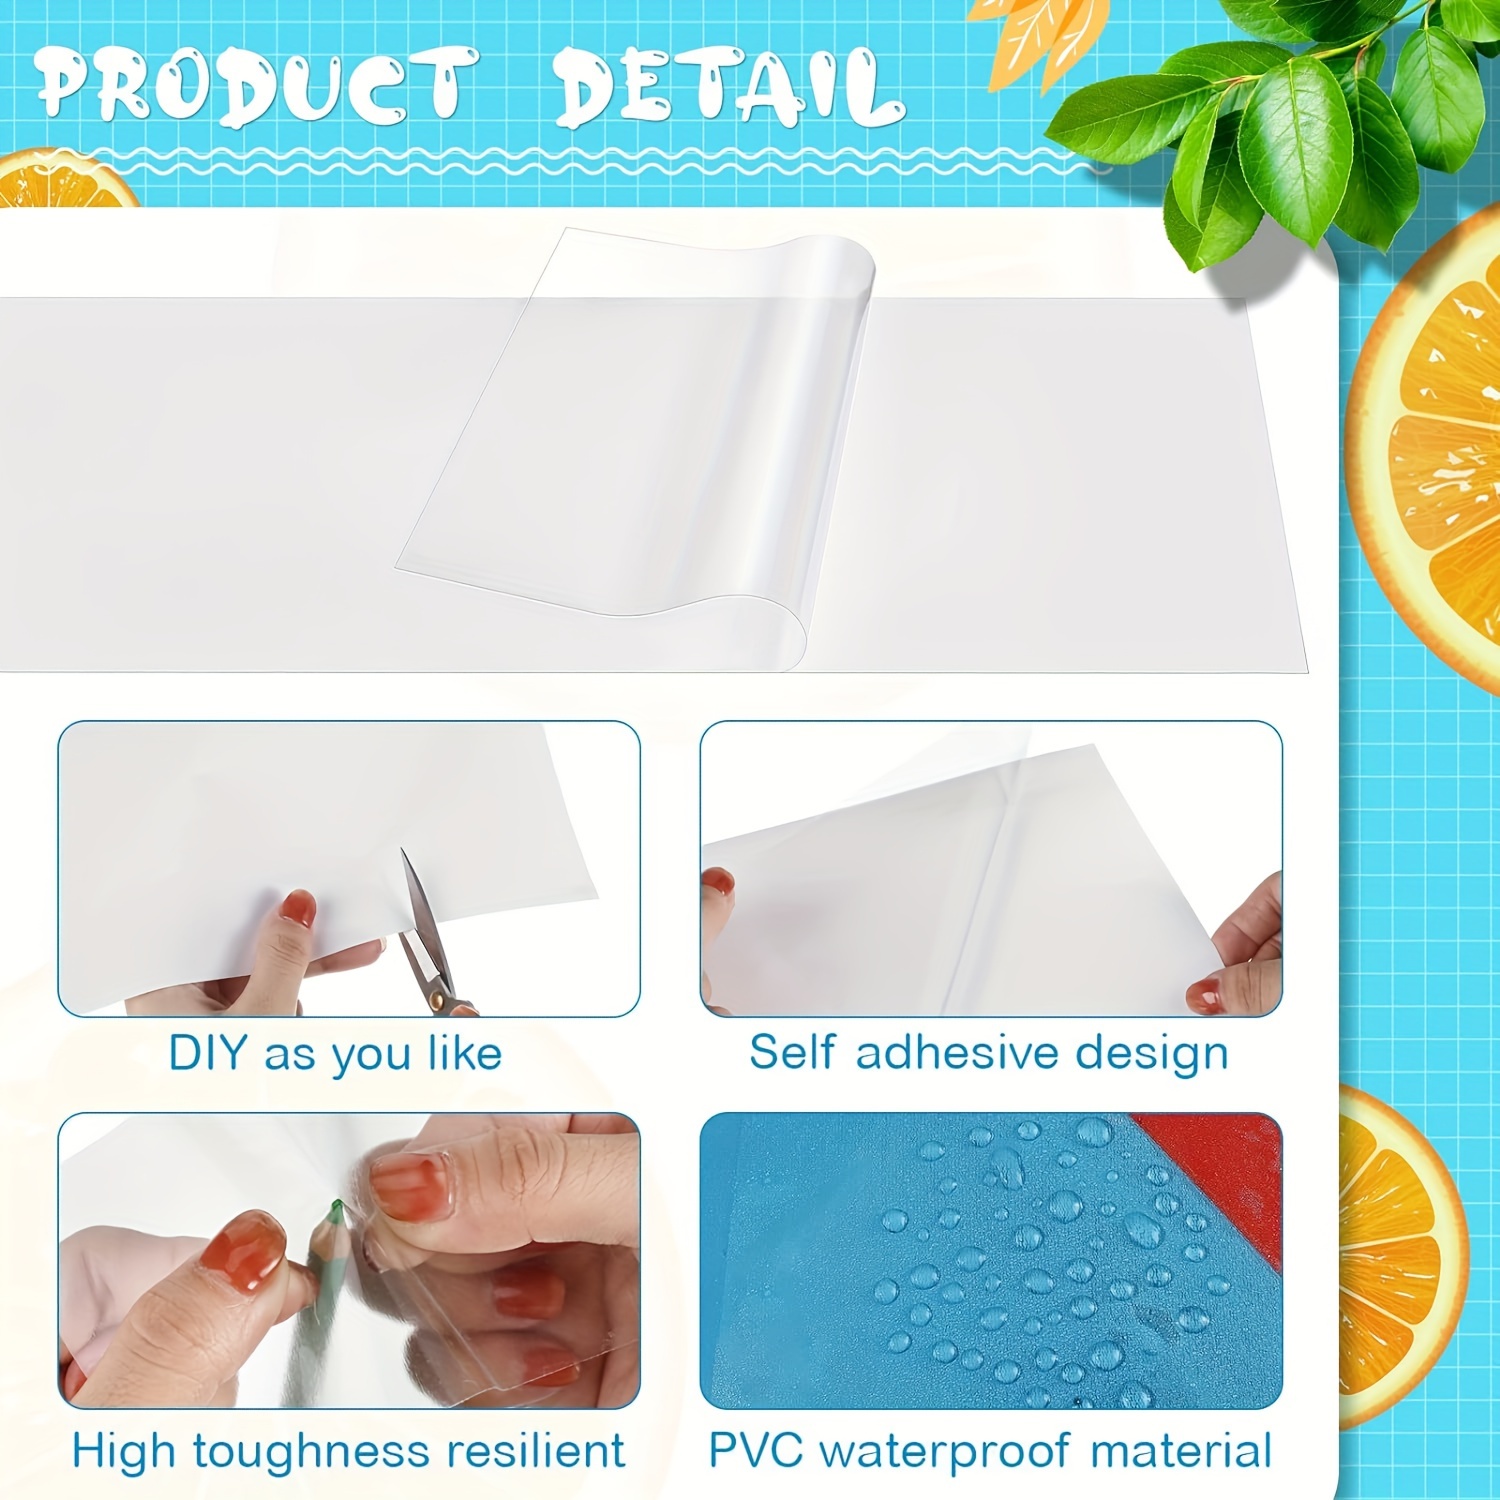 Tpu Inflatable Patch Repair Kit Large Self Adhesive Repair - Temu